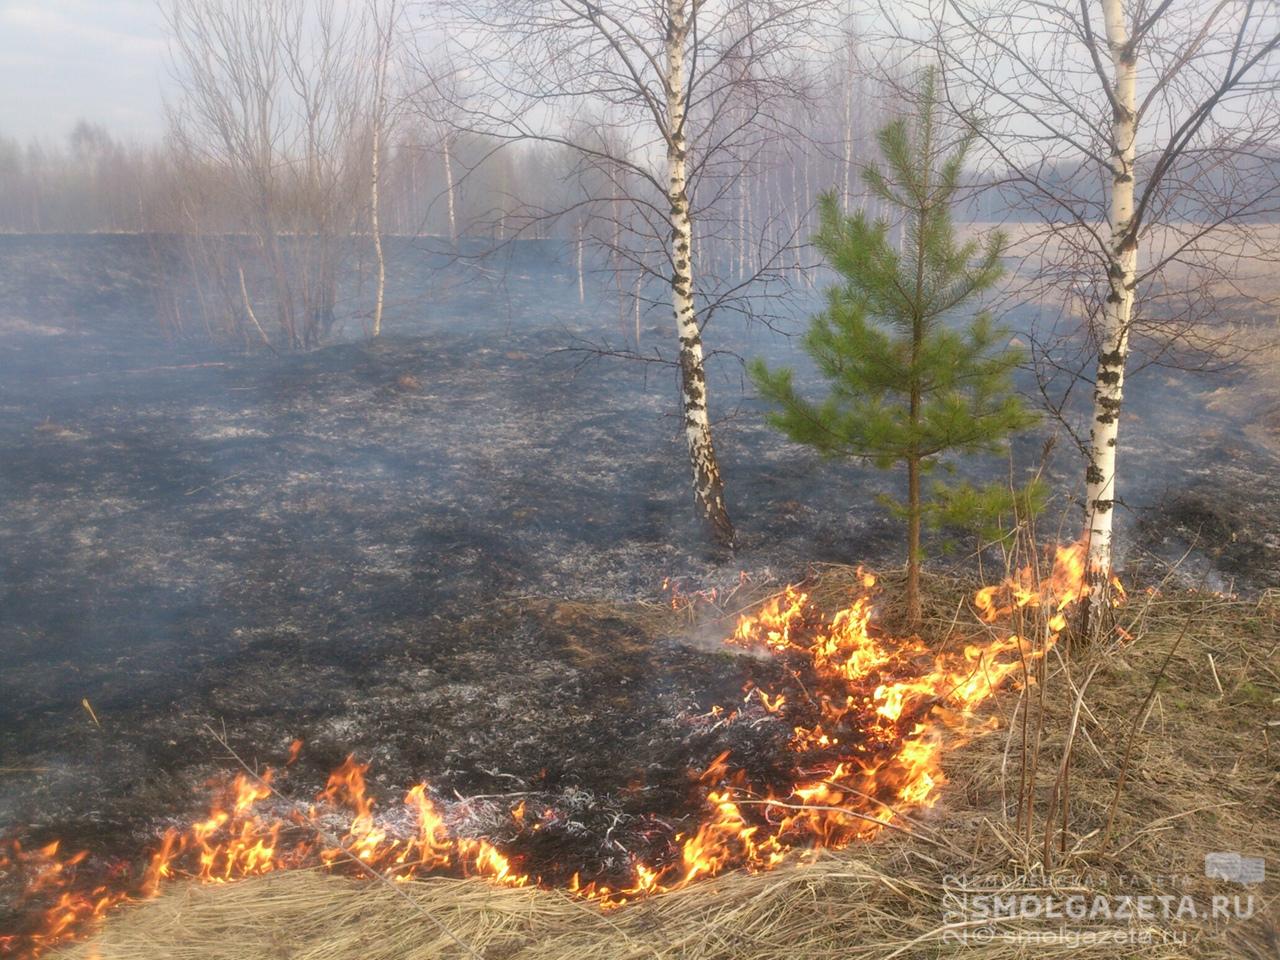 За воскресенье в Смоленской области потушили 29 травяных палов